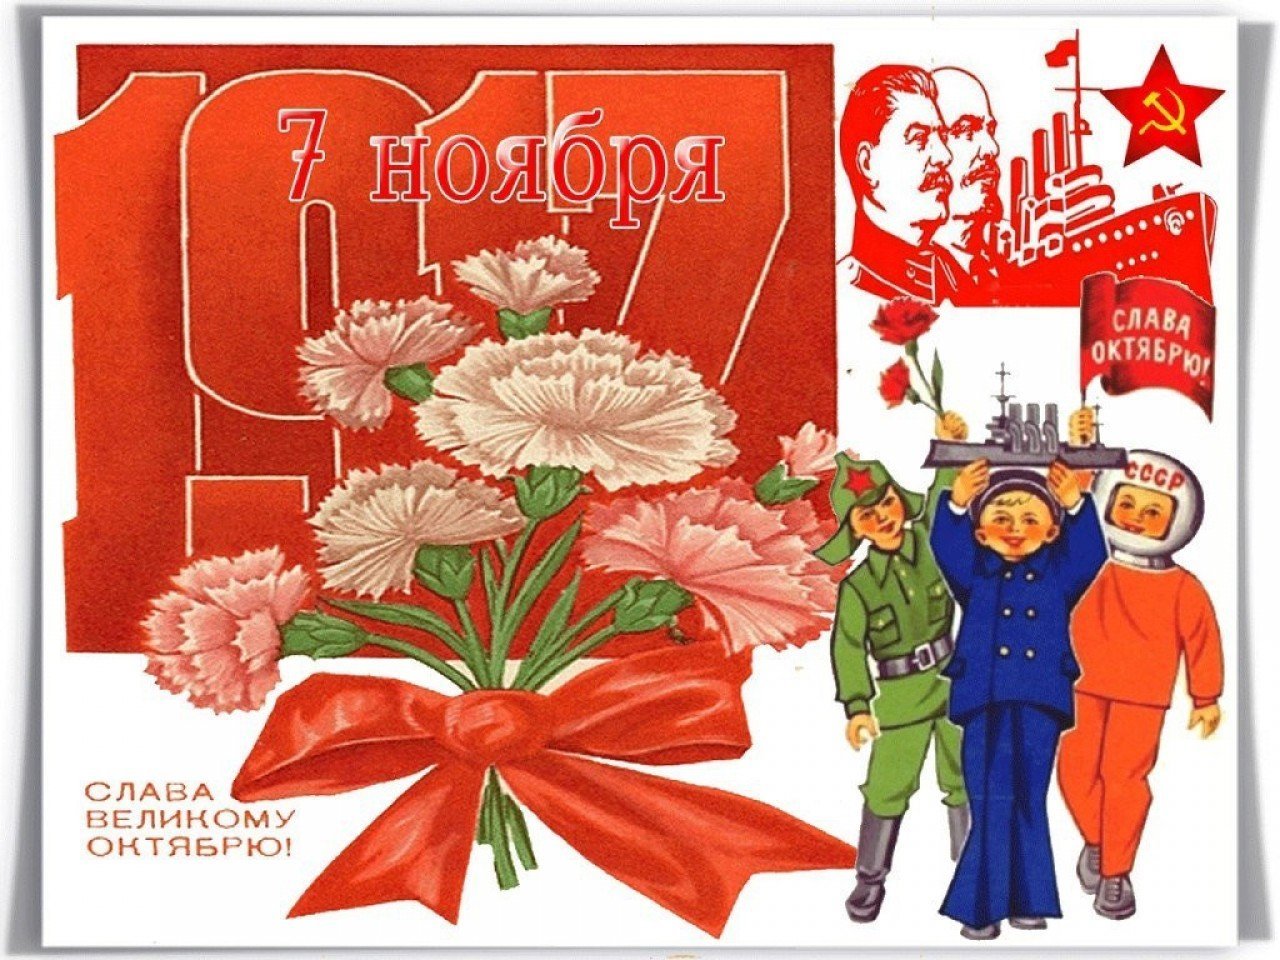 7 ноябрь 2019. 7 Ноября. С днём 7 ноября поздравления. С праздником Великого октября. С днем Октябрьской революции.